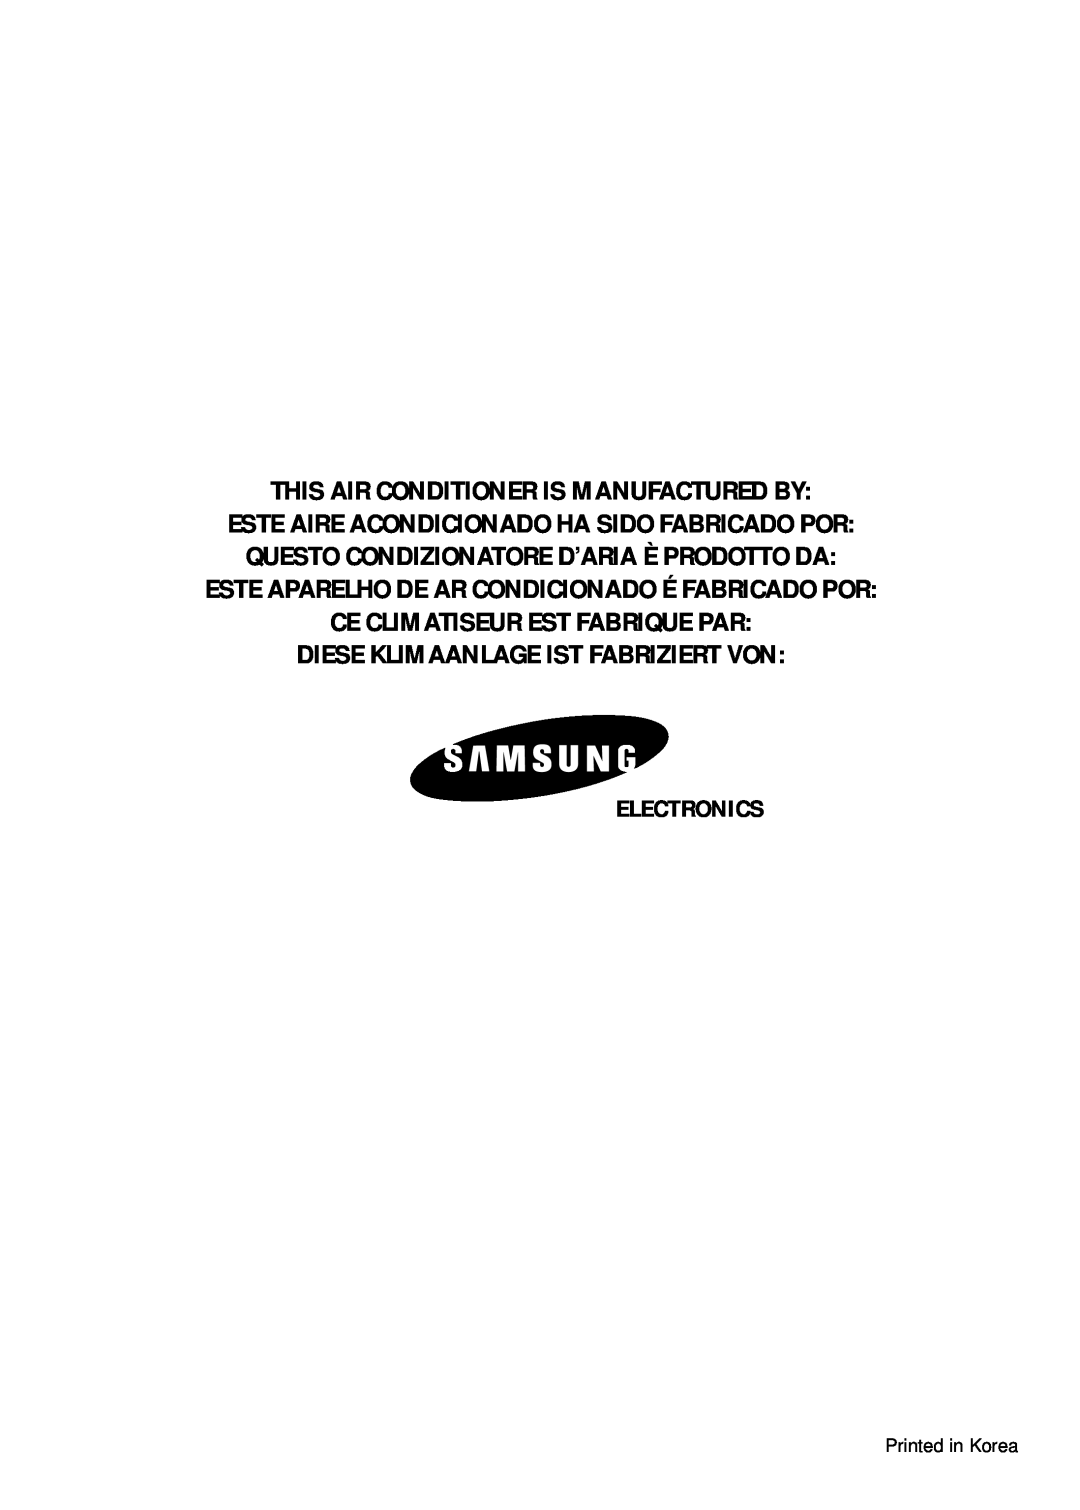 Samsung AD19A1(B1)E07, MH07ZV-19 This Air Conditioner Is Manufactured By, Este Aparelho De Ar Condicionado É Fabricado Por 